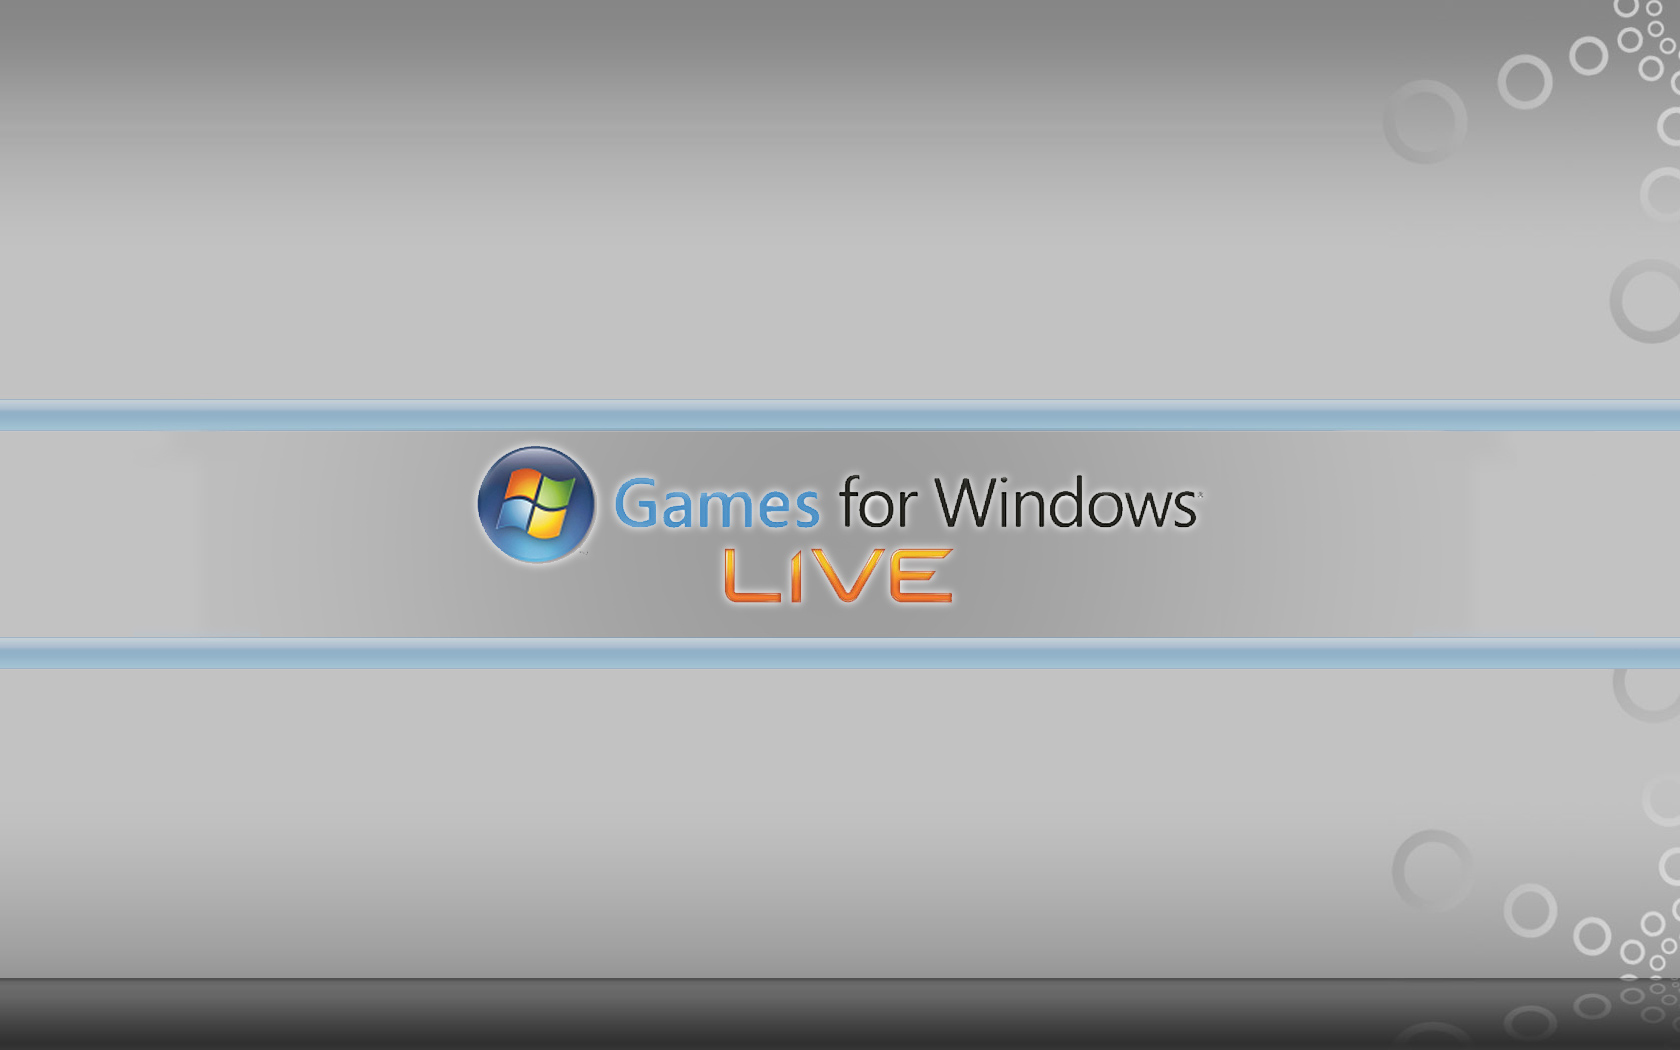 Trò chơi Windows nền tường ảnh động bởi TheWax trên DeviantArt sẽ khiến bạn thích thú với hiệu ứng chuyển động sống động và màu sắc rực rỡ. Với cách thức độc đáo và tài năng của TheWax, bạn sẽ có trải nghiệm game tuyệt vời.